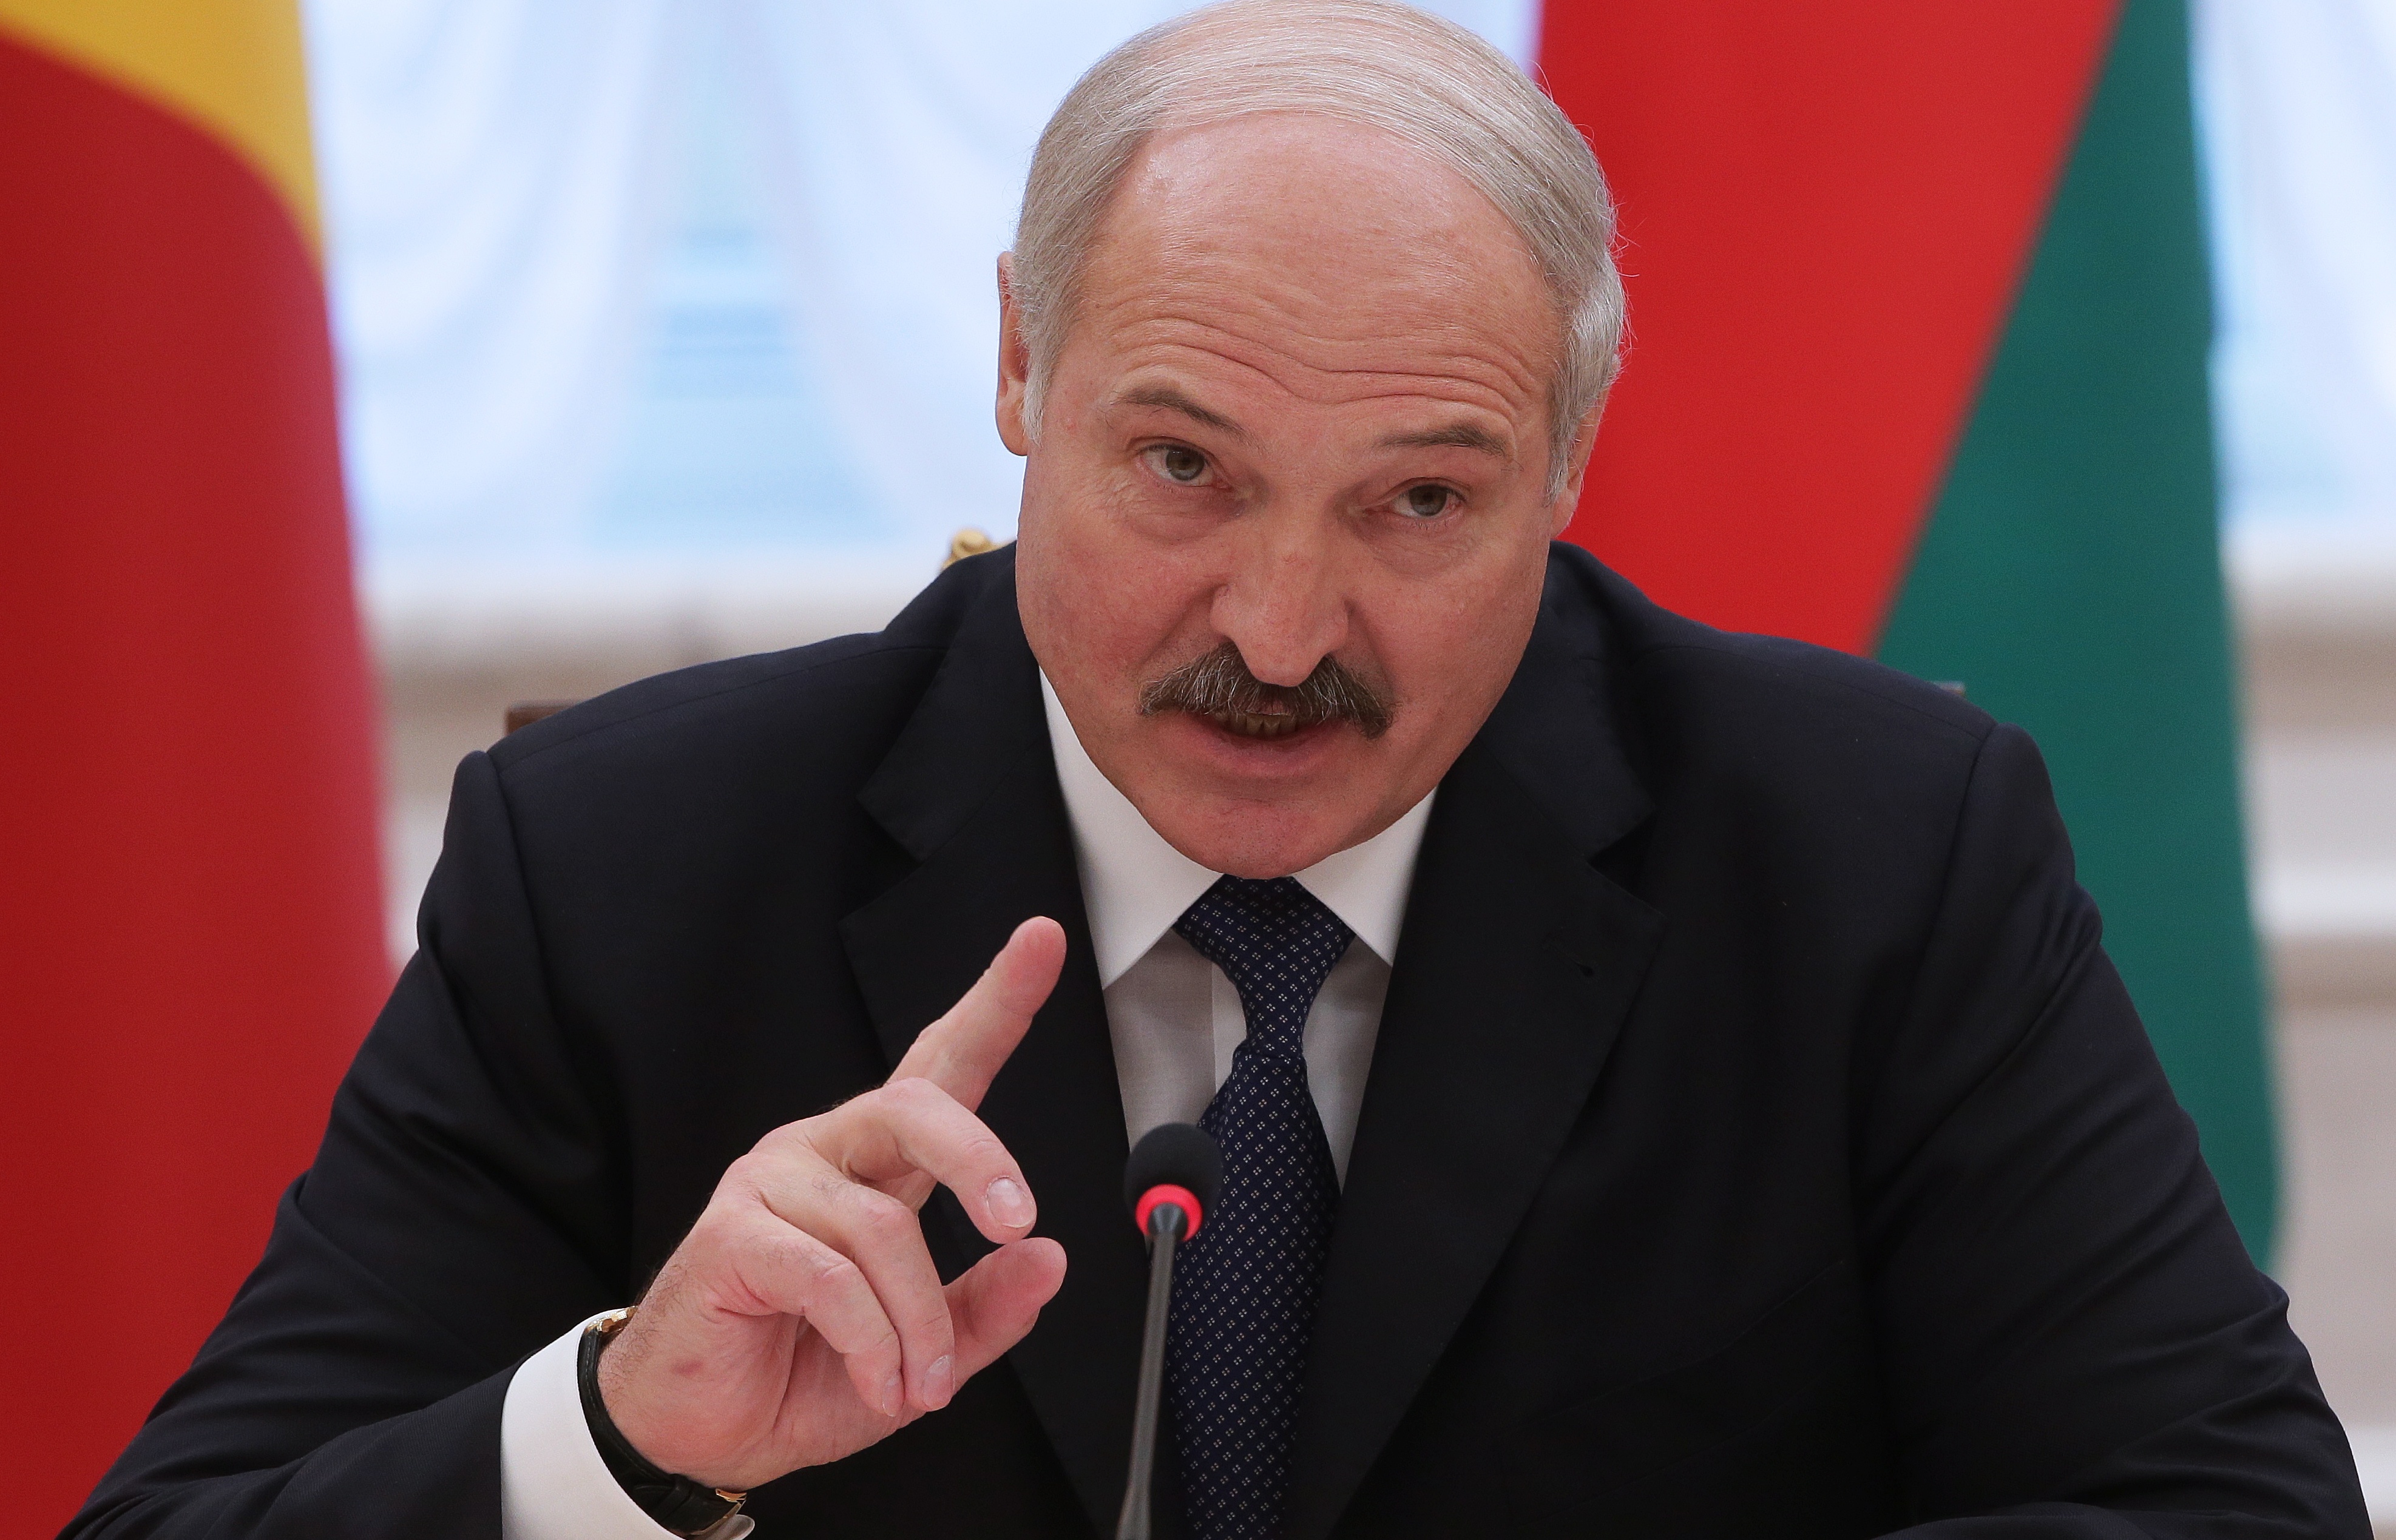 Rusiya ilə Ukraynanı bərpa edəcəyik - Lukaşenko